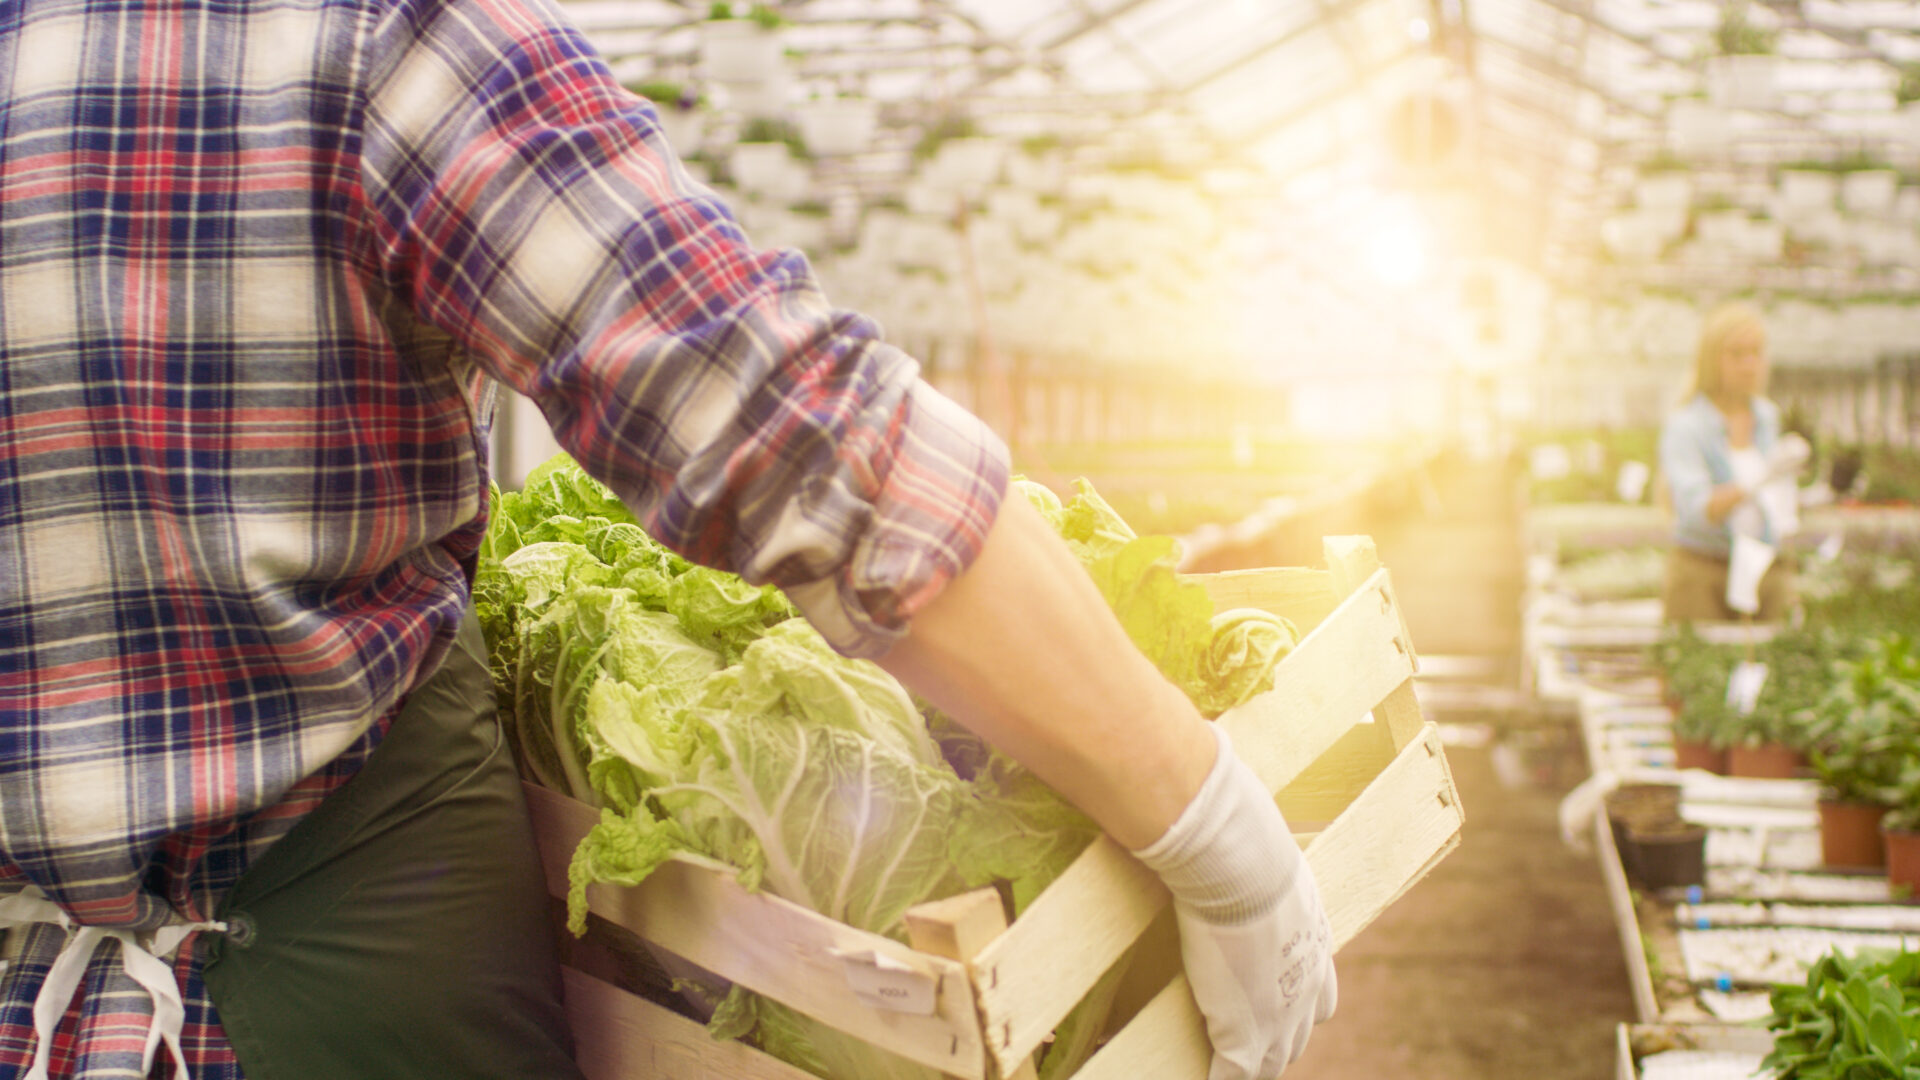 Bilde av en person som bærer en kasse med grønnsaker i et veksthus. En person i bakgrunn. (Bilde: Shutterstock)